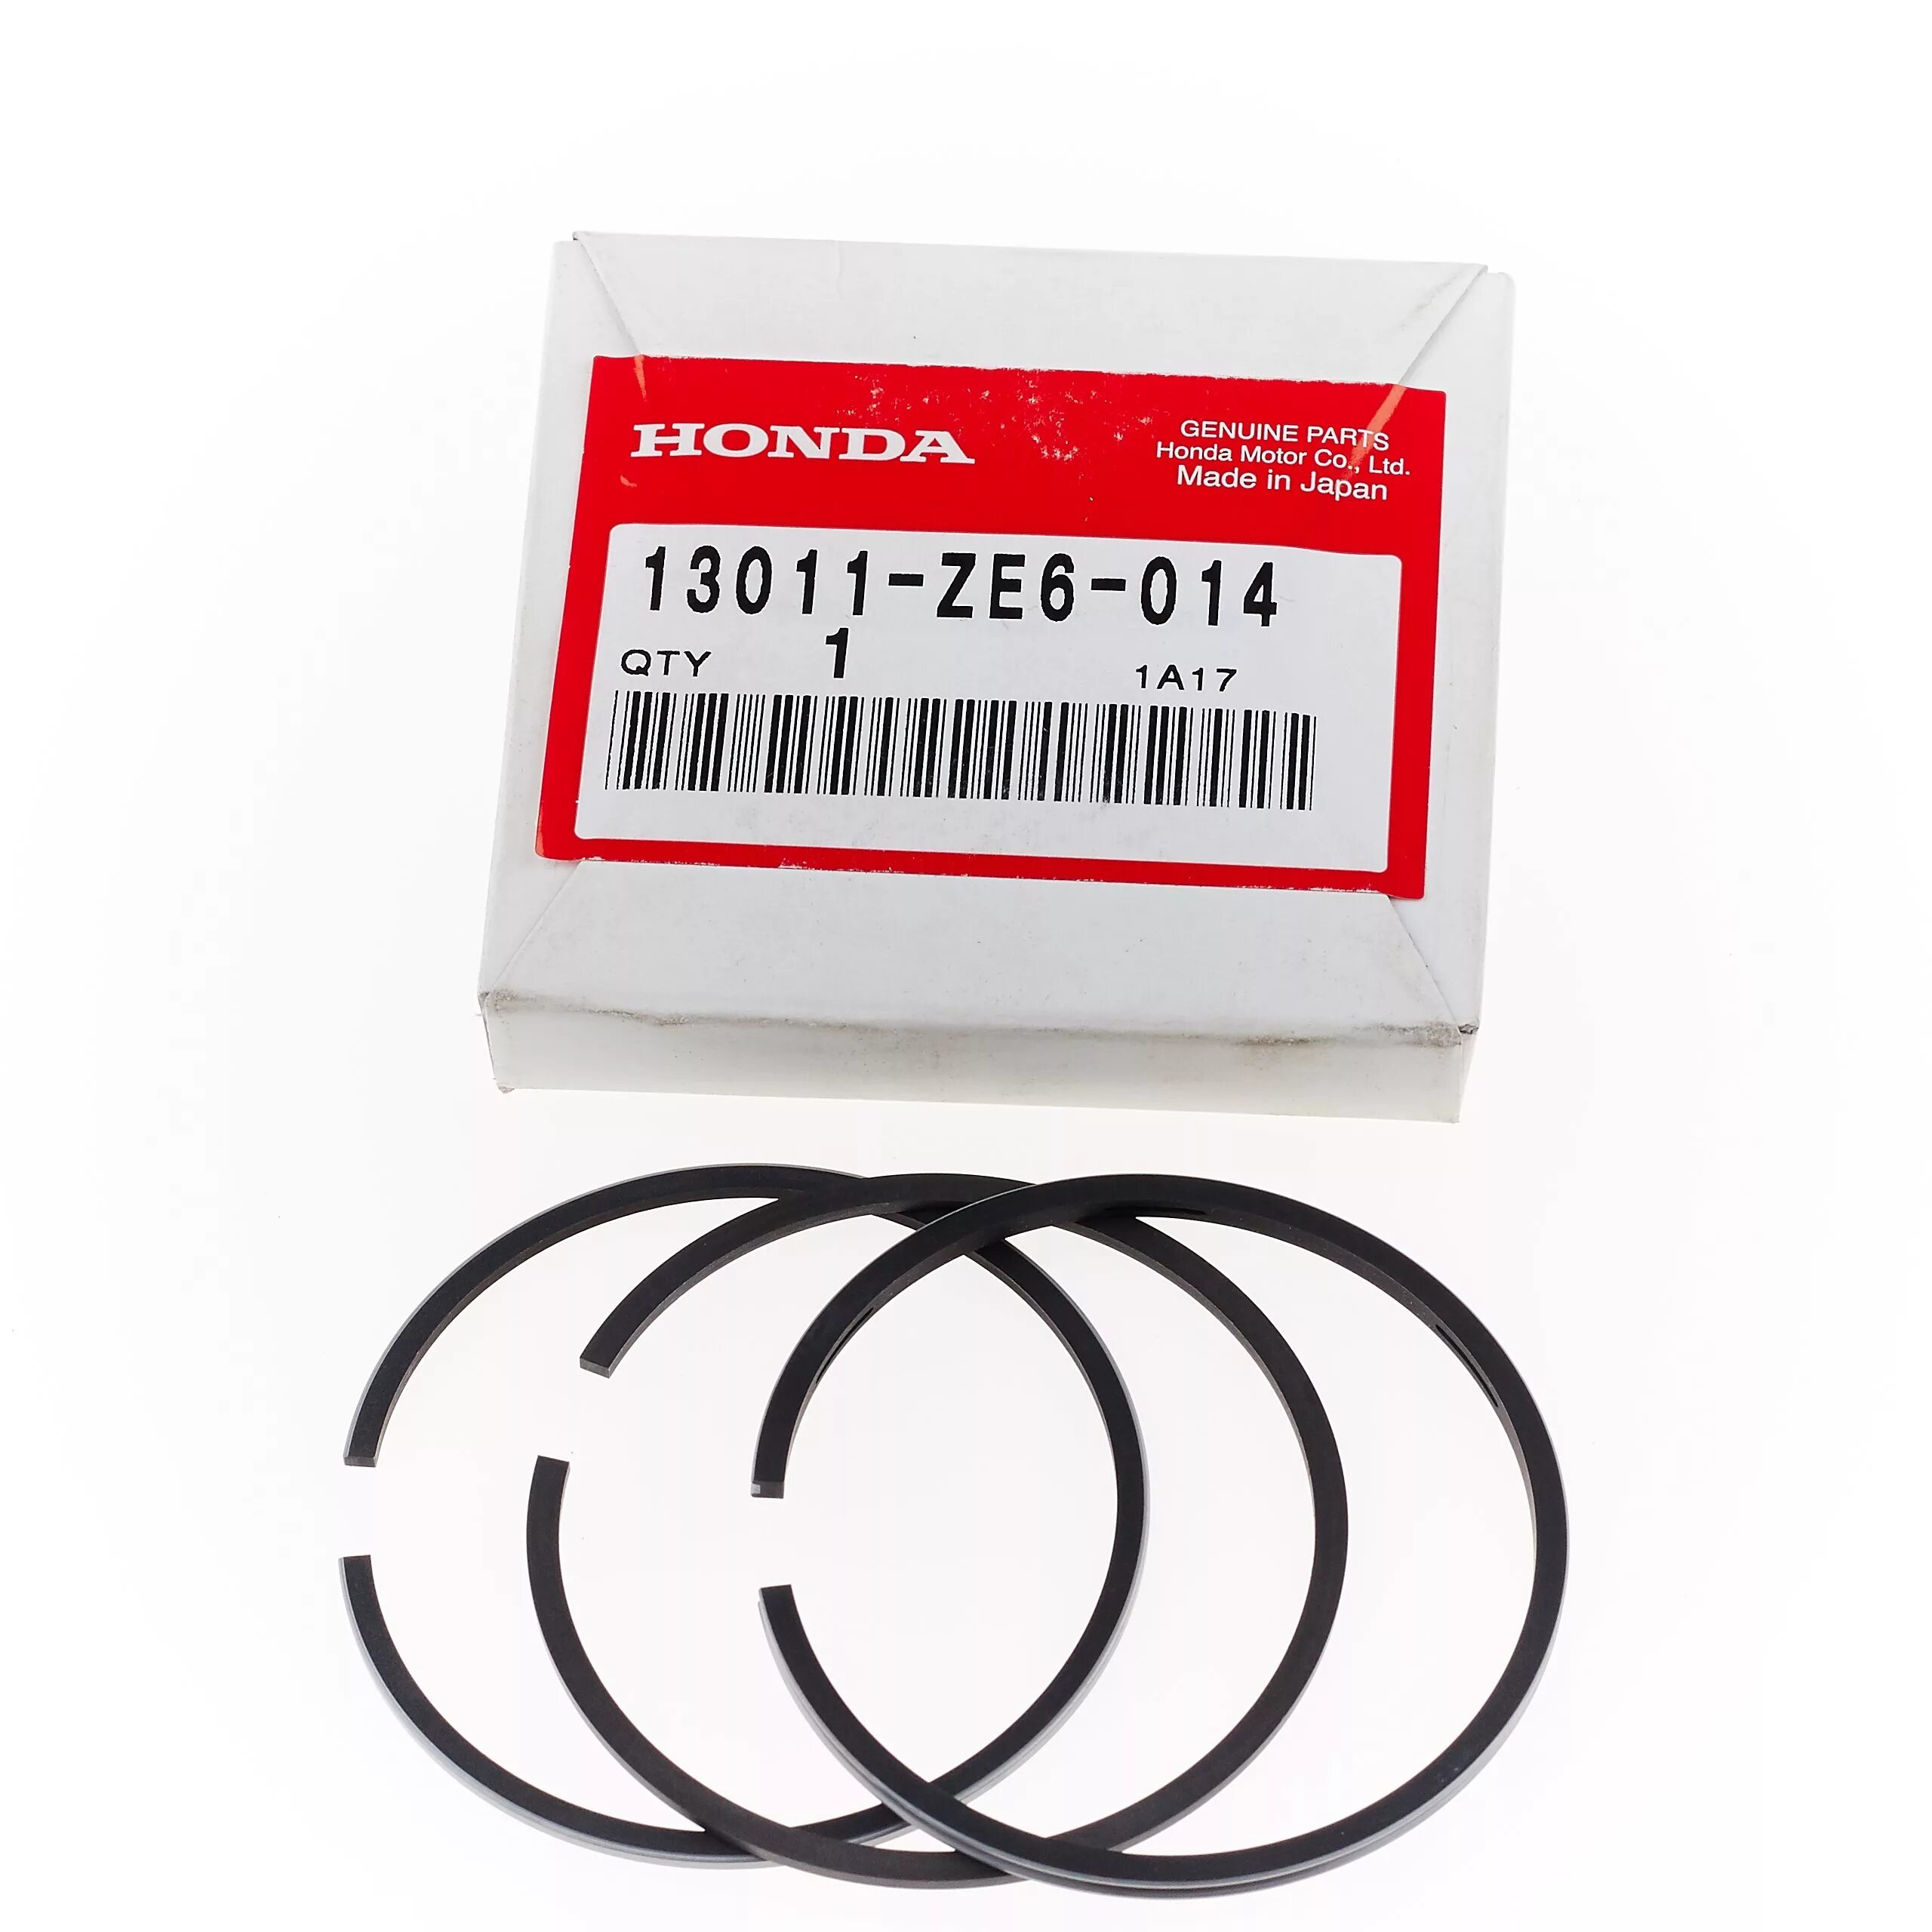 Кольца поршневые honda. Кольца поршневые Honda gx120. Кольца поршневые для Honda GX 120 (60mm). Honda 13011-r40-a12 комплект поршневых колец. Кольца поршневые для Honda GX 120 (60mm) 109022 Размеры.